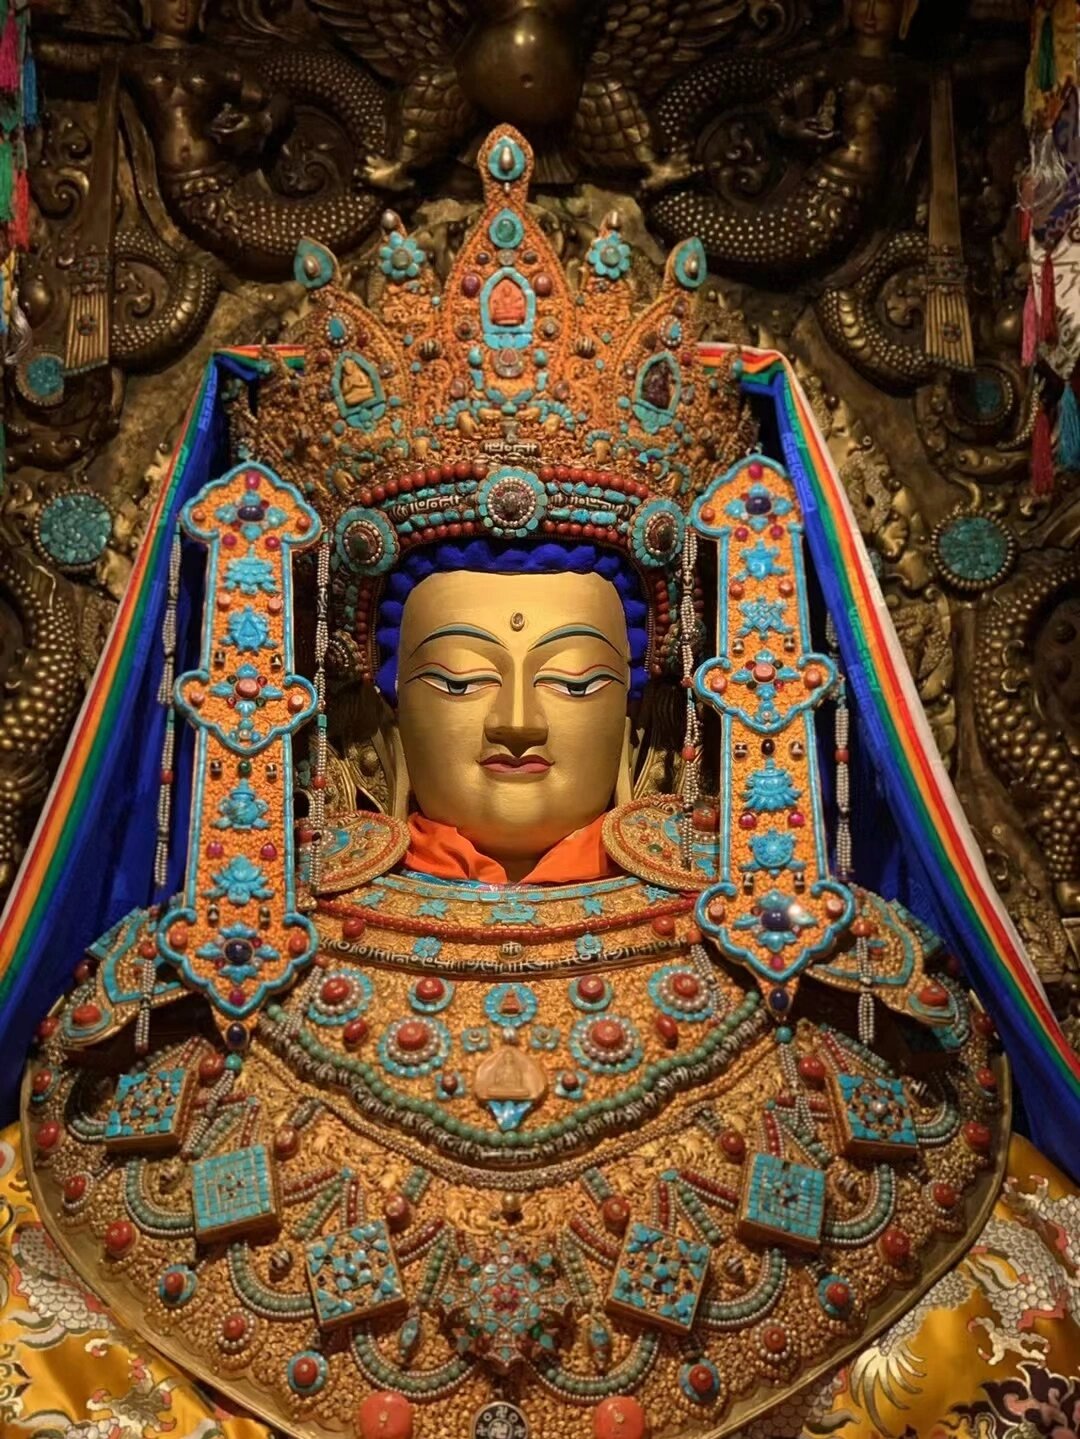 拉萨大昭寺的觉沃佛 释迦牟尼佛十二岁等身像   此佛像名为觉沃佛,是